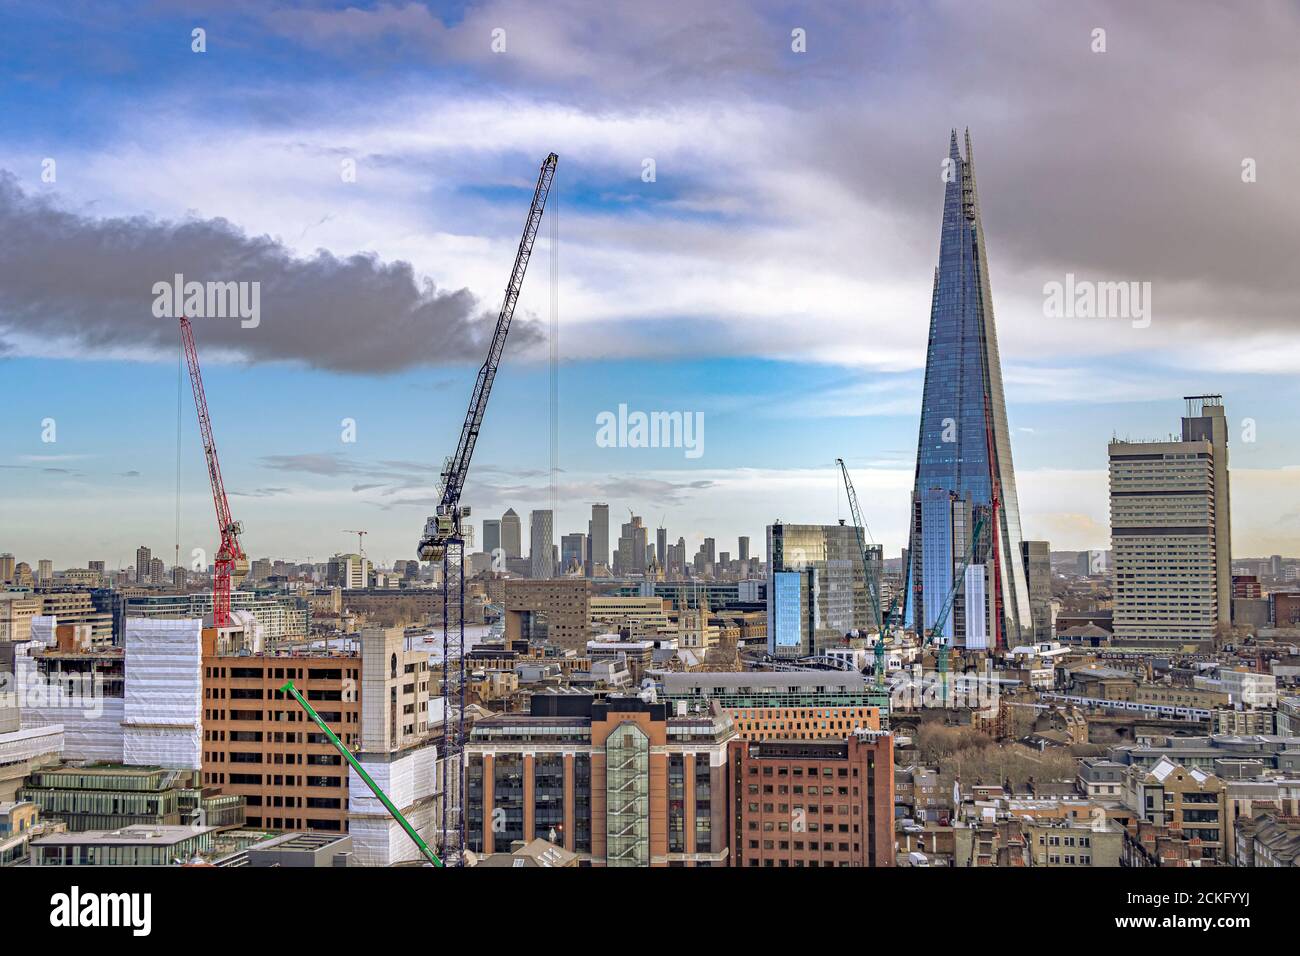 Ein Blick über einen Teil des Londoner Stadtteils Southwark mit dem Shard und dem Guy's Hospital nebeneinander, London, Großbritannien Stockfoto